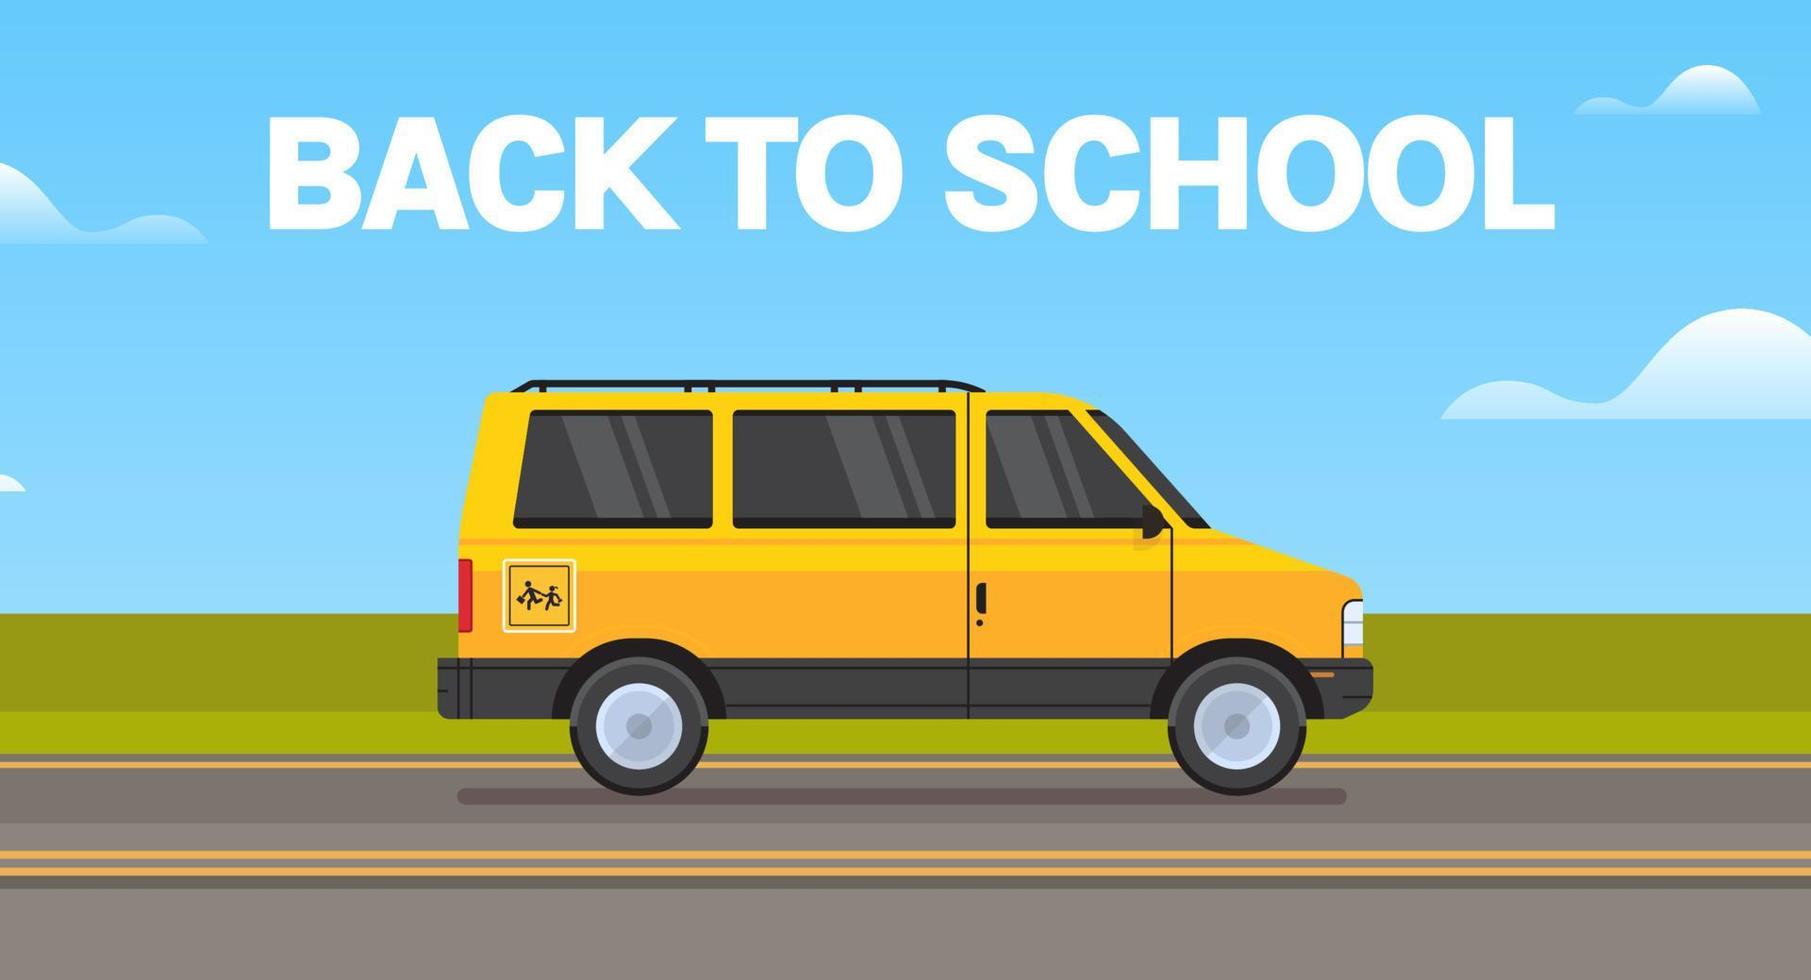 geel school- bus vervoer en terug naar school- leerlingen kinderen vervoer concept horizontaal vlak vector illustratie.